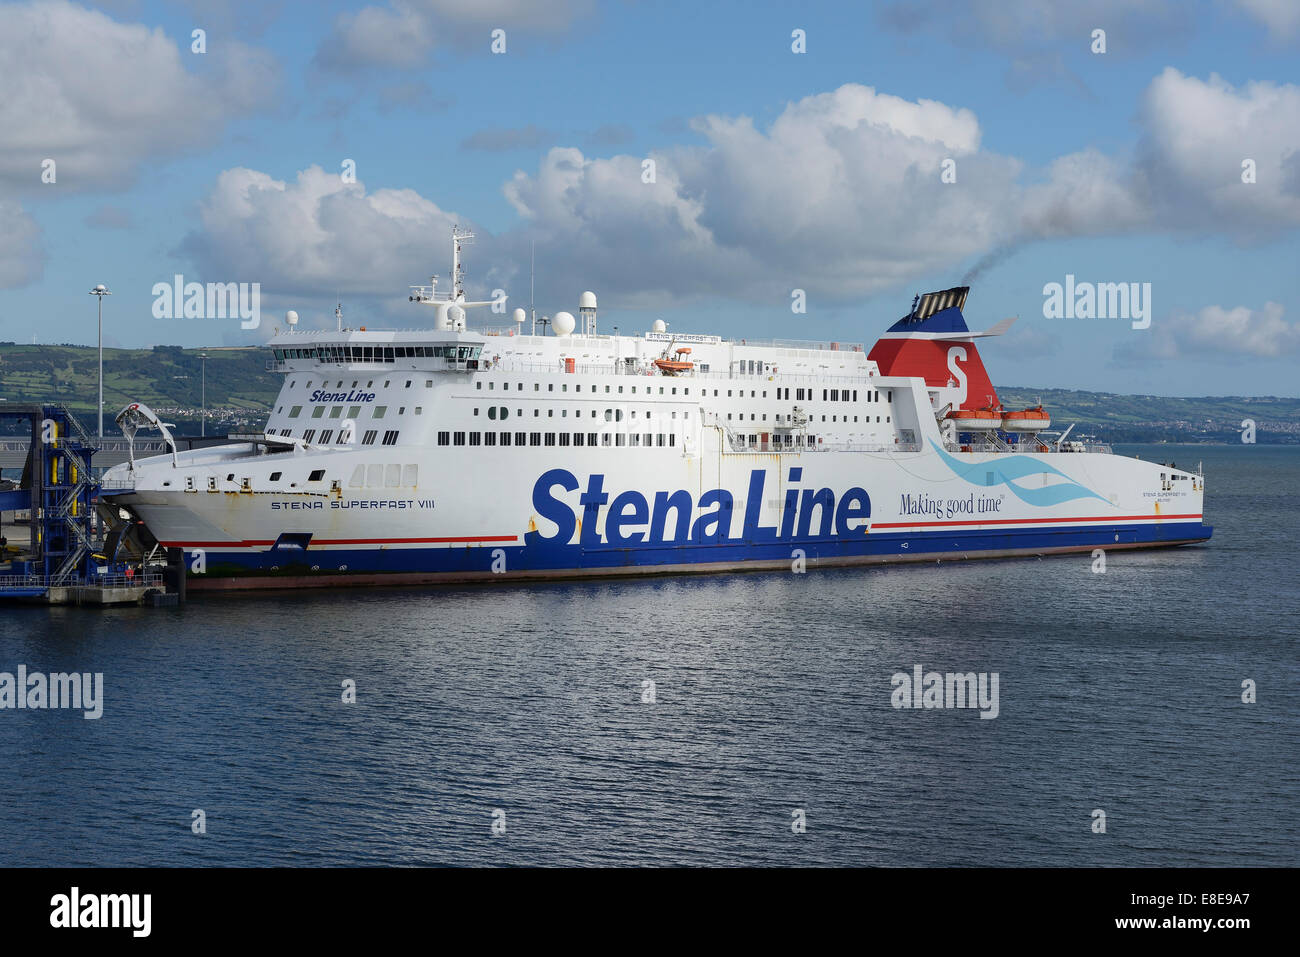 Stena Line ferry Belfast Superfast VIII à quais UK Banque D'Images